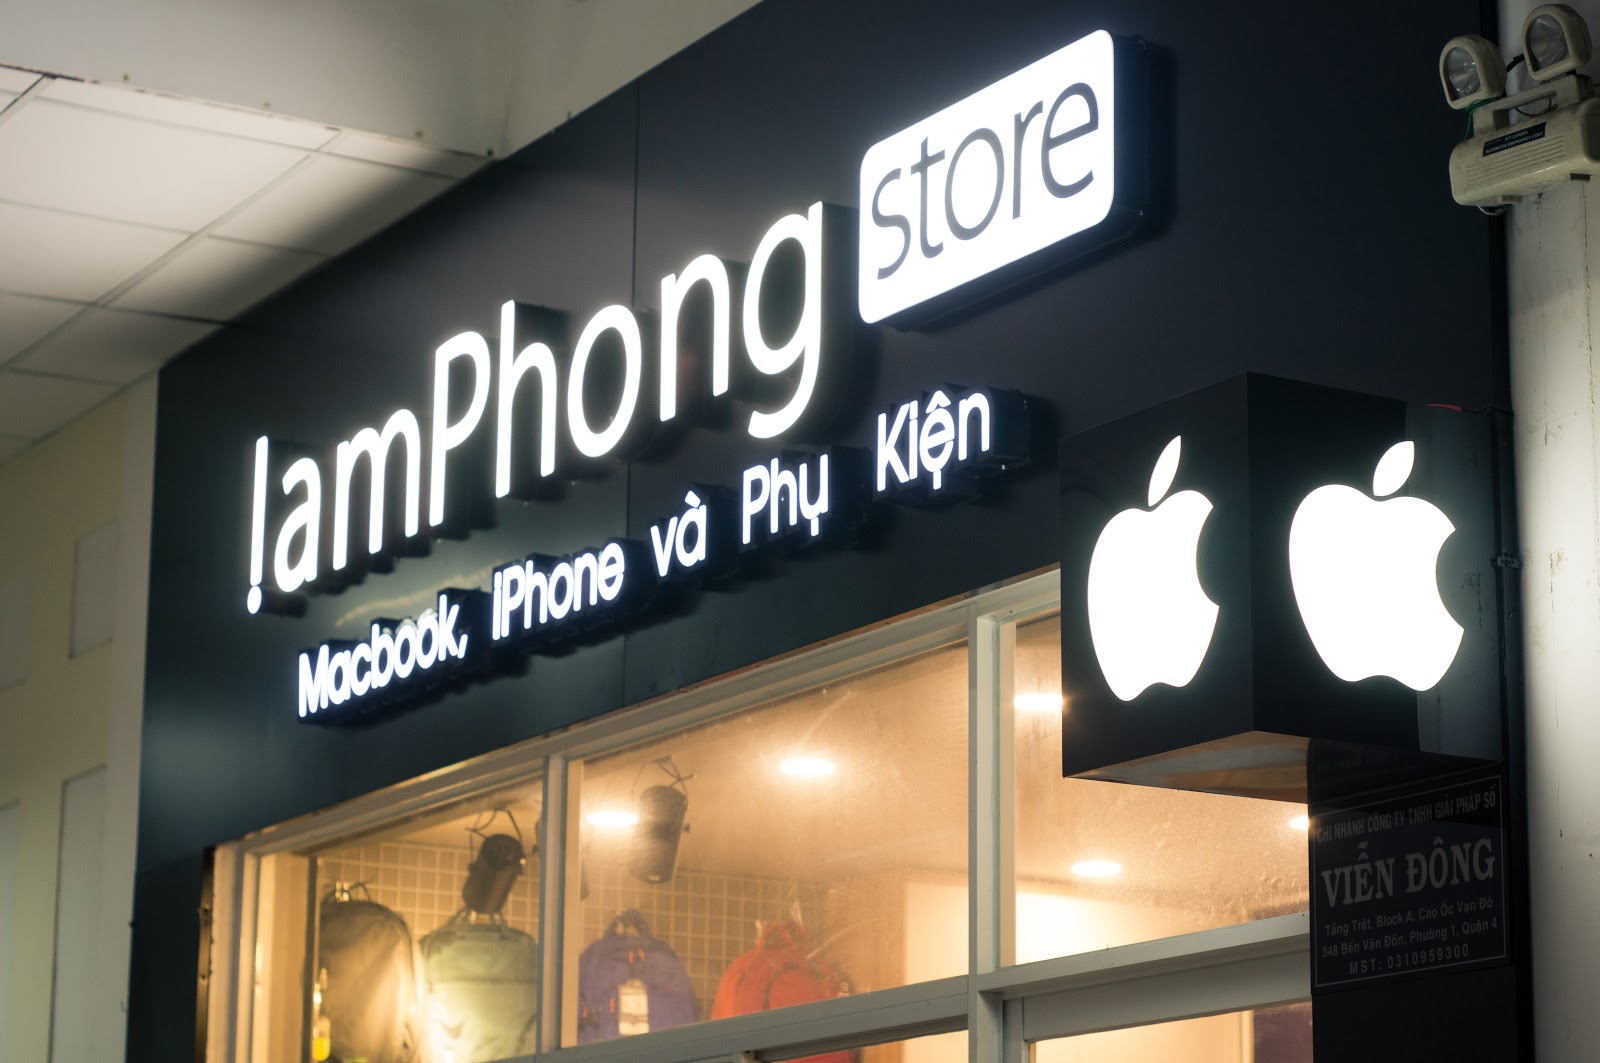 Lâm Phong Store – Macbook Cũ Đà Nẵng Uy Tín